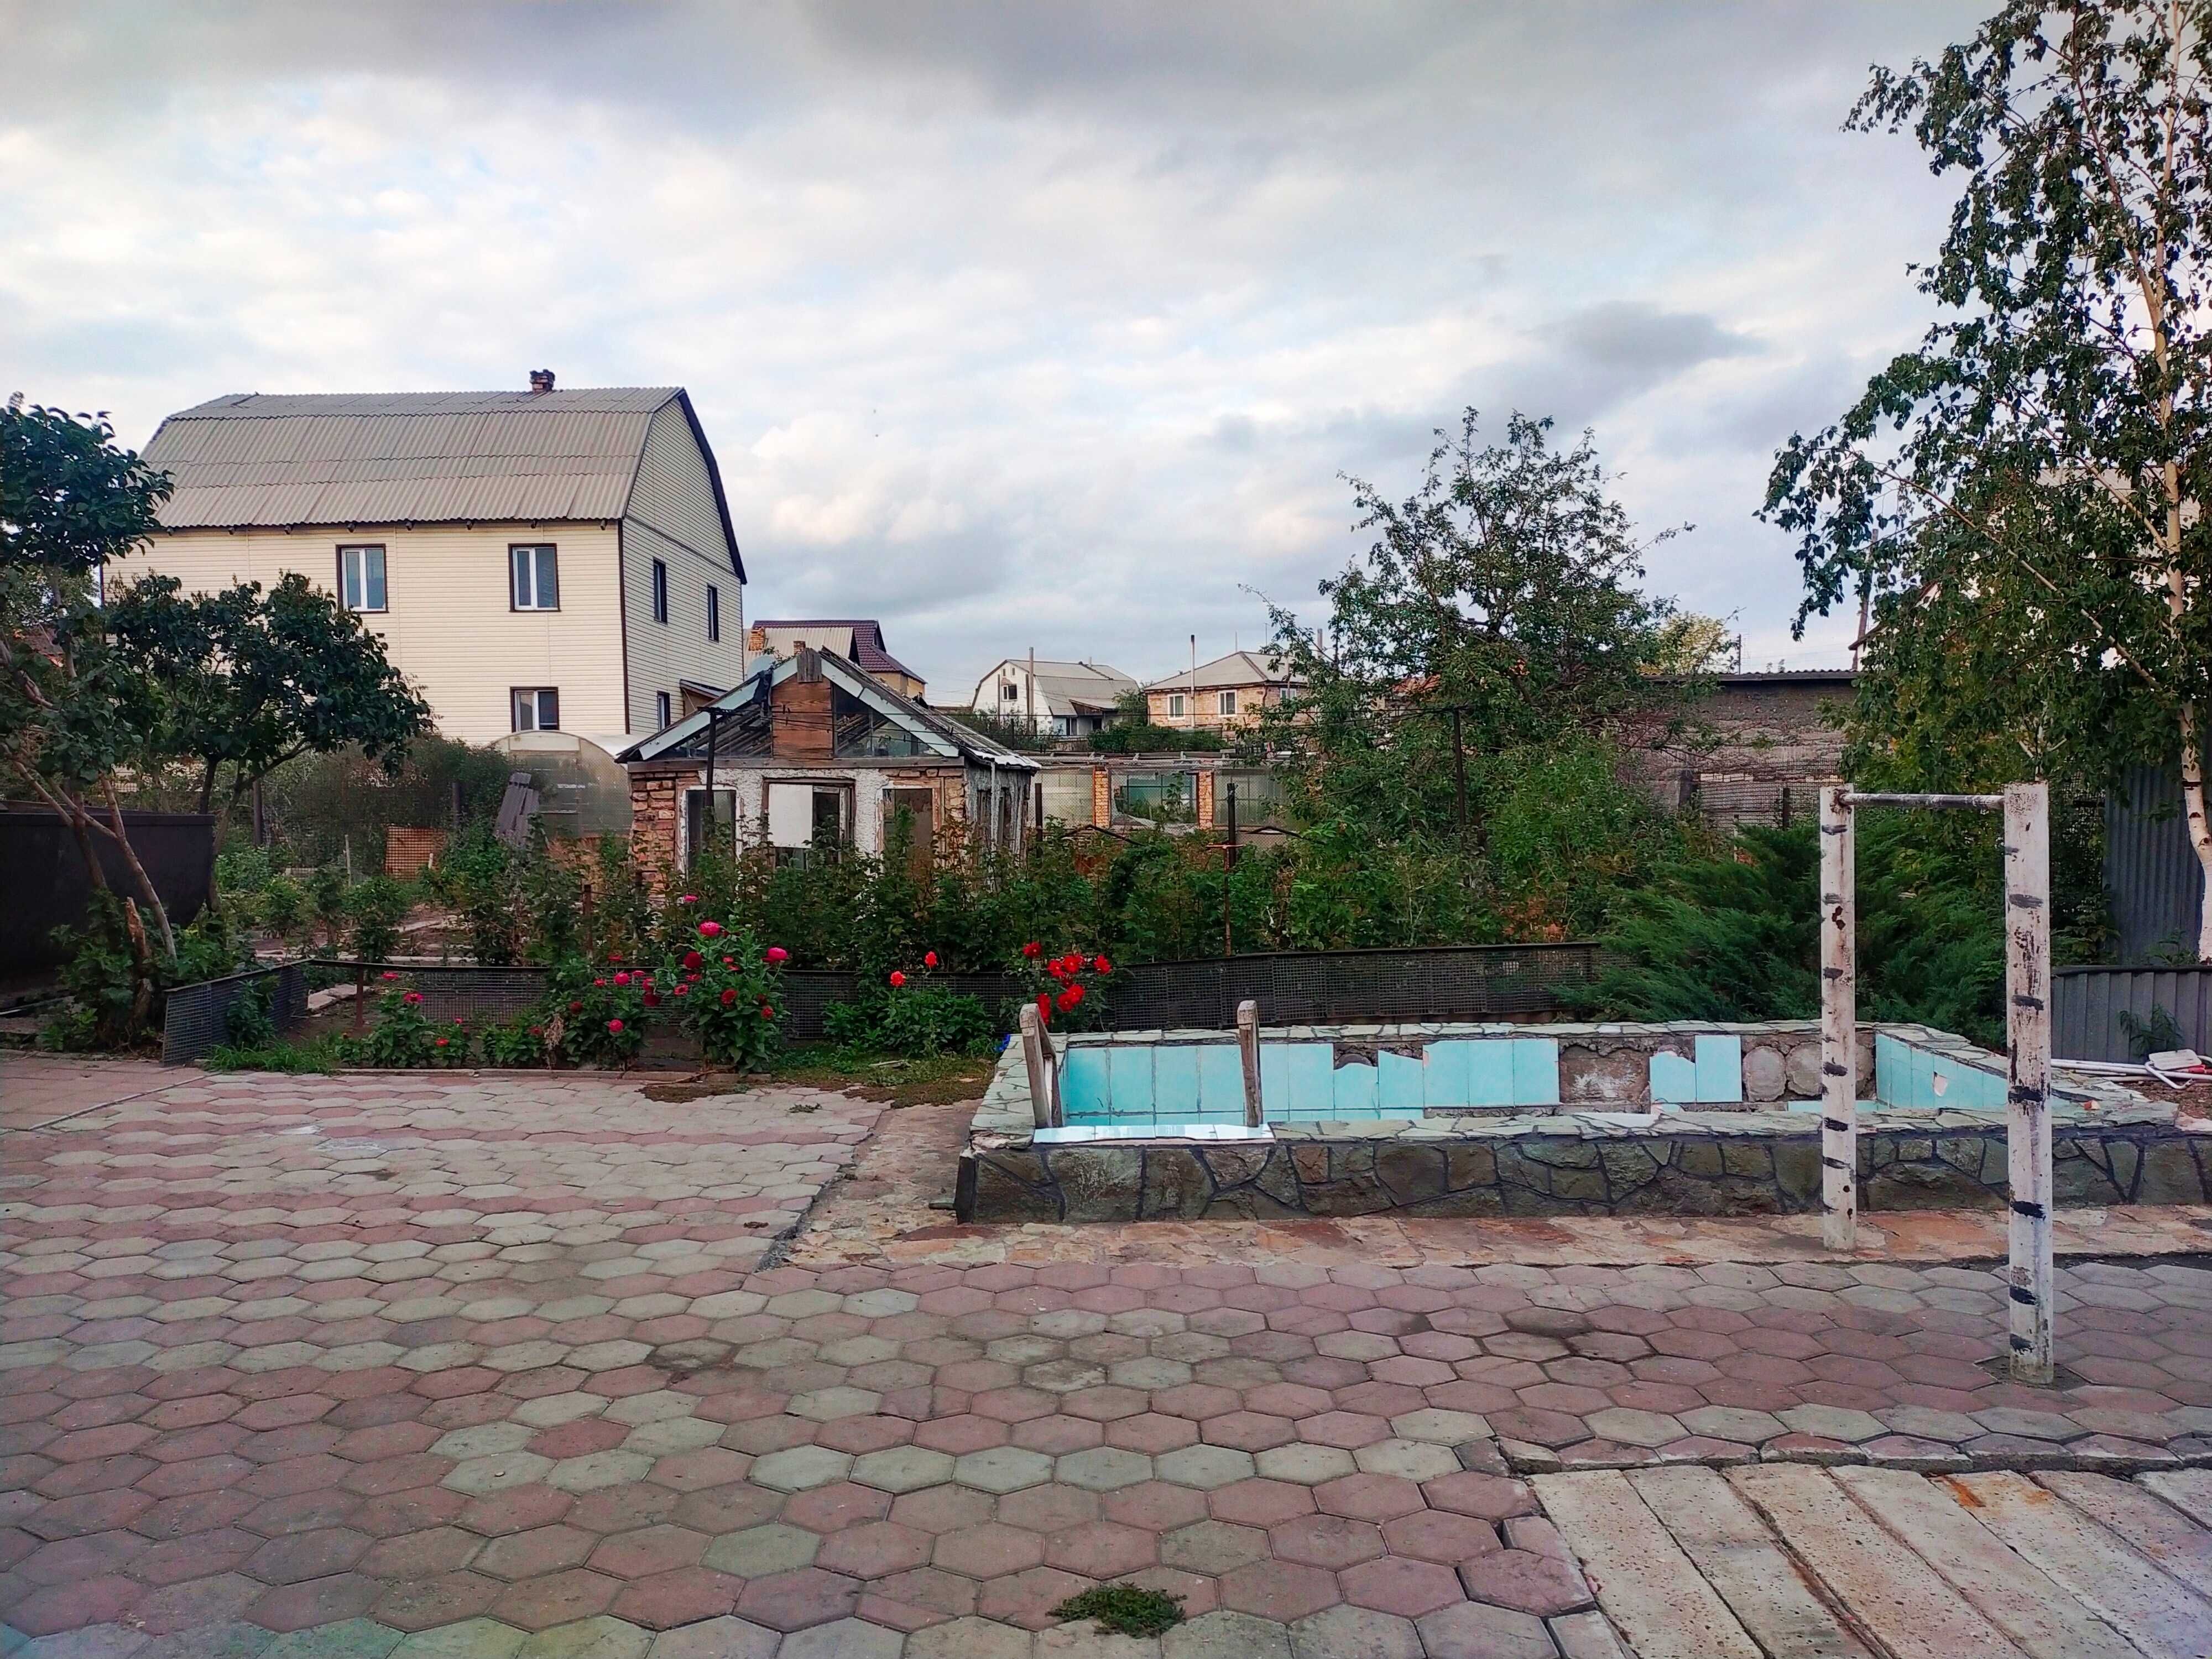 Купить дом в Караганде. Продажа домов в Караганде - поиск недвижимости | webmaster-korolev.ru